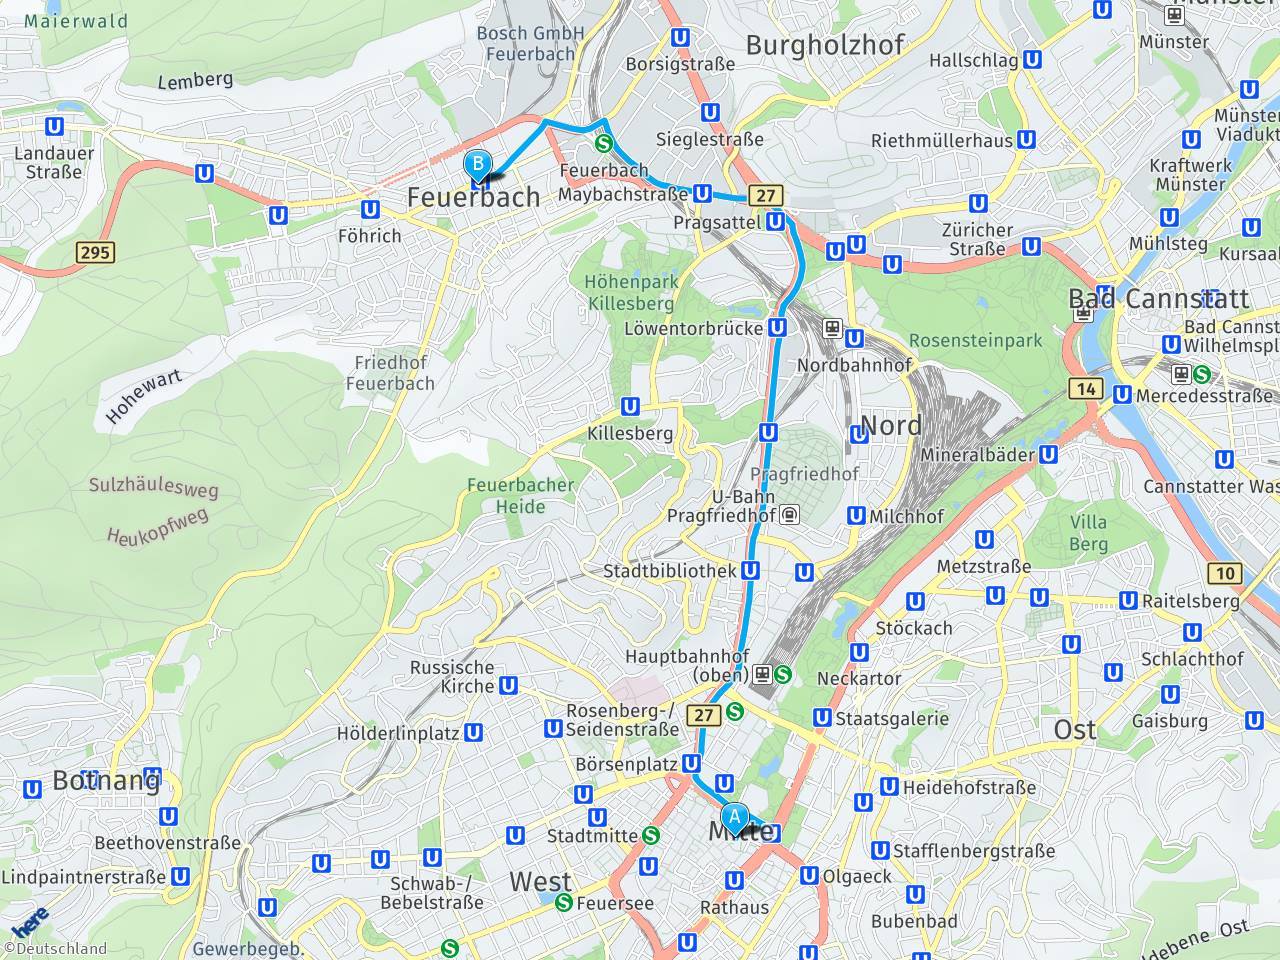 Как добраться из мюнхена в баден-баден: поезд, автобус, такси, машина. расстояние, цены на билеты и расписание 2021 на туристер.ру